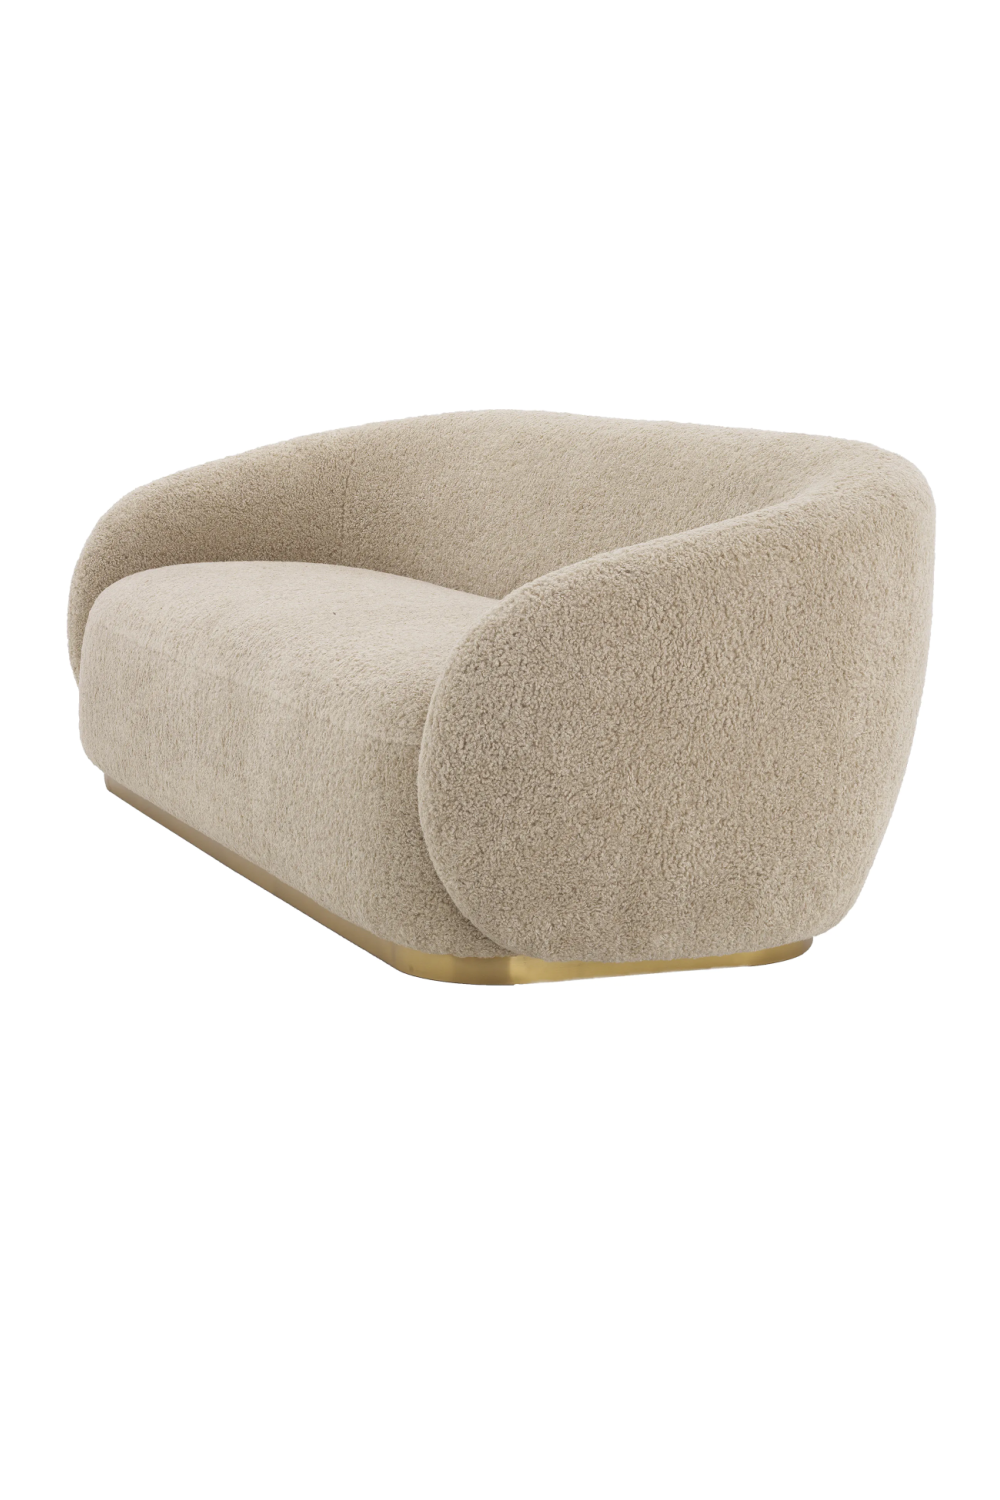 Curved Contemporary Sofa | Eichholtz Brice | Oroa.com